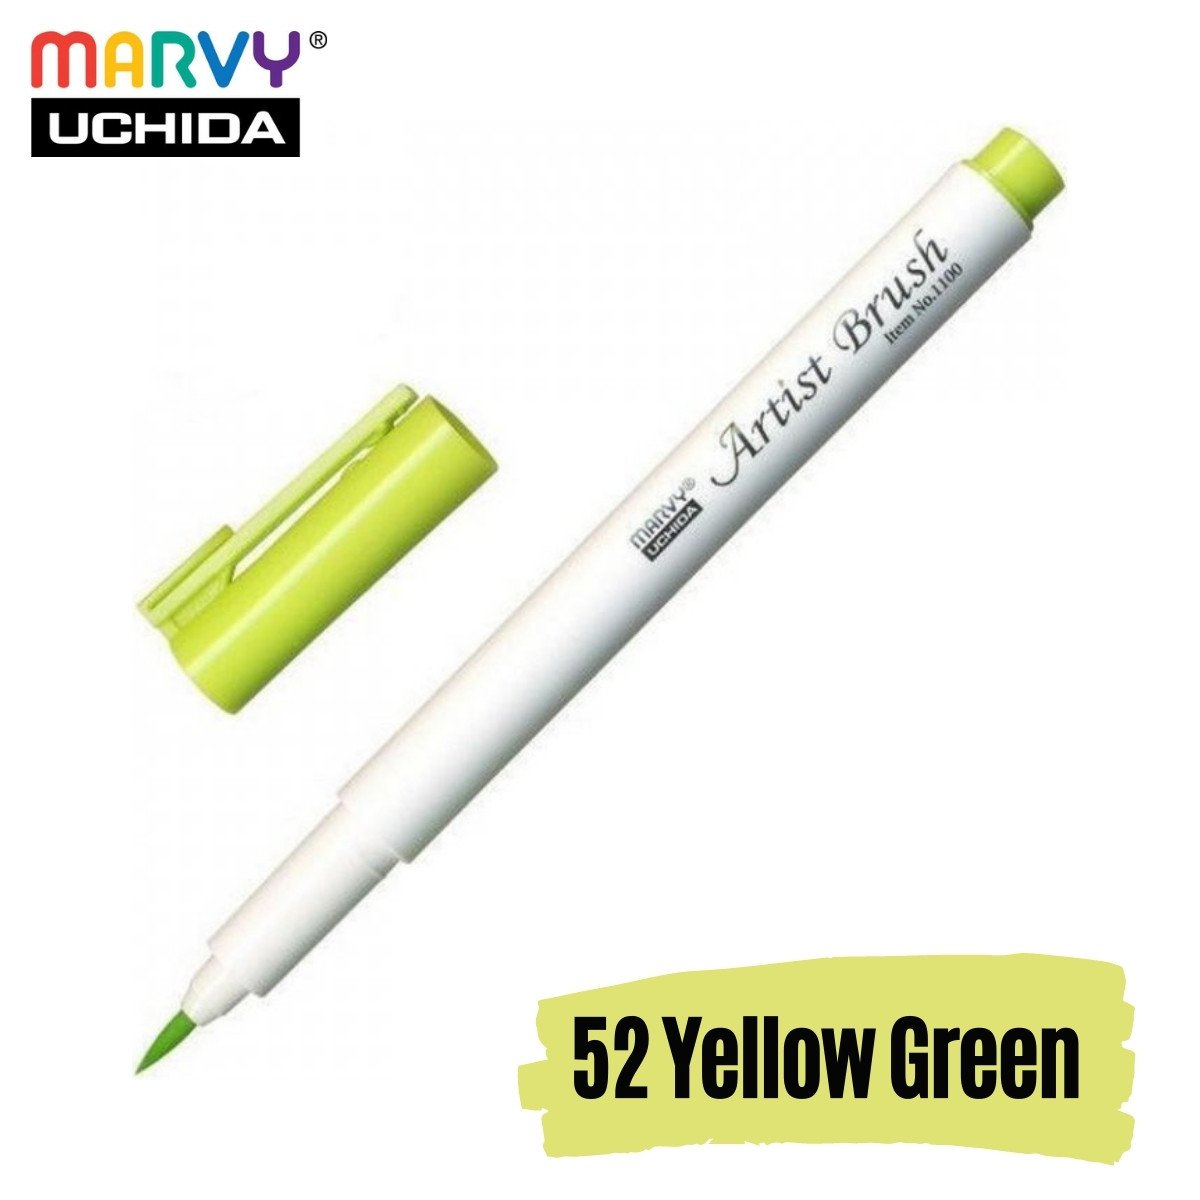 Marvy Artist Brush Pen 1100 Firça Uçlu Kalem 52 Yellow Green